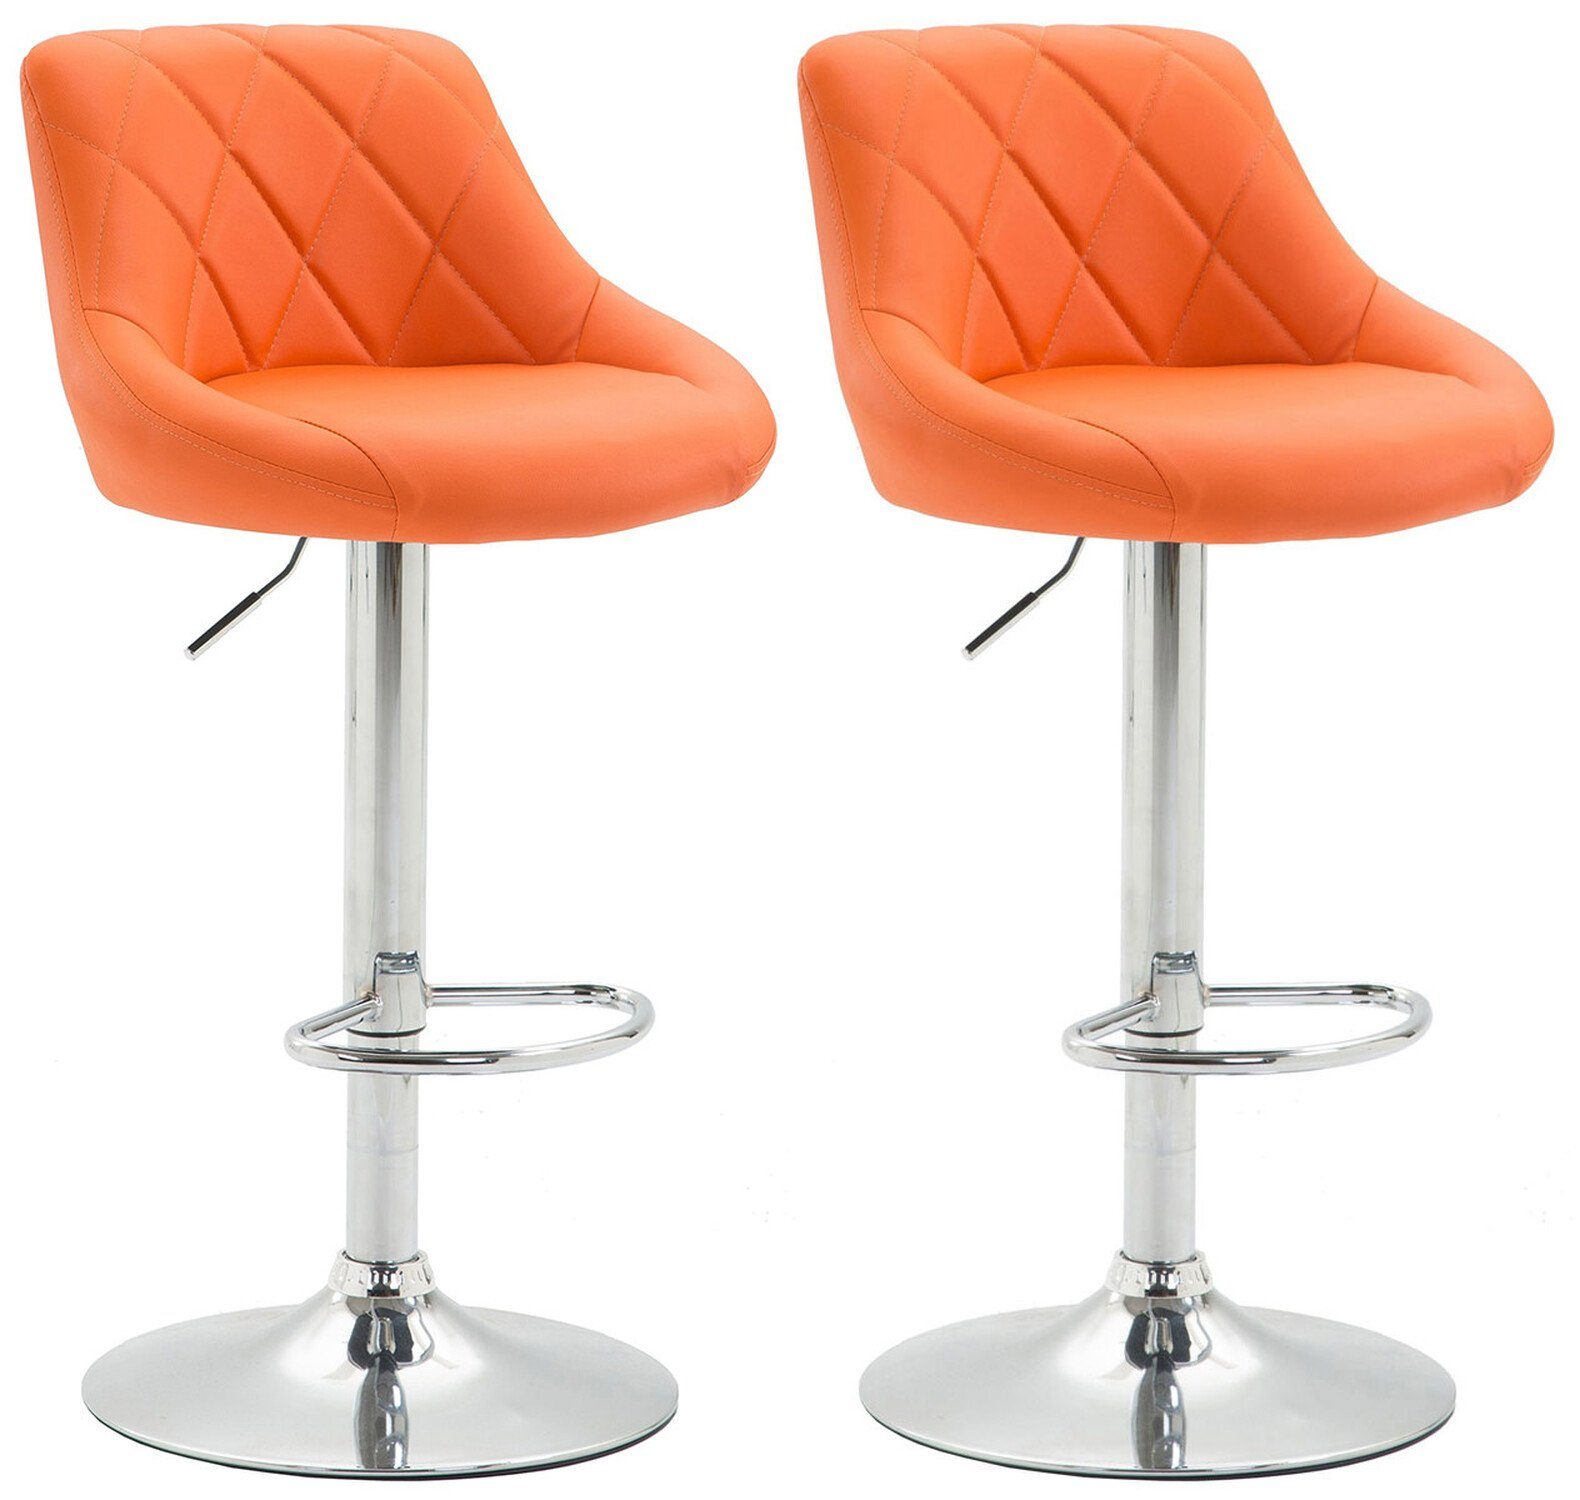 TPFLiving Barhocker Lazius (2er Set), mit Rückenlehne und Fußstütze - Barstuhl höhenverstellbar - Hocker für Theke & Küche - Tresenhocker 360° drehbar - verchromter Stahl - Sitzfläche: Kunstleder Orange